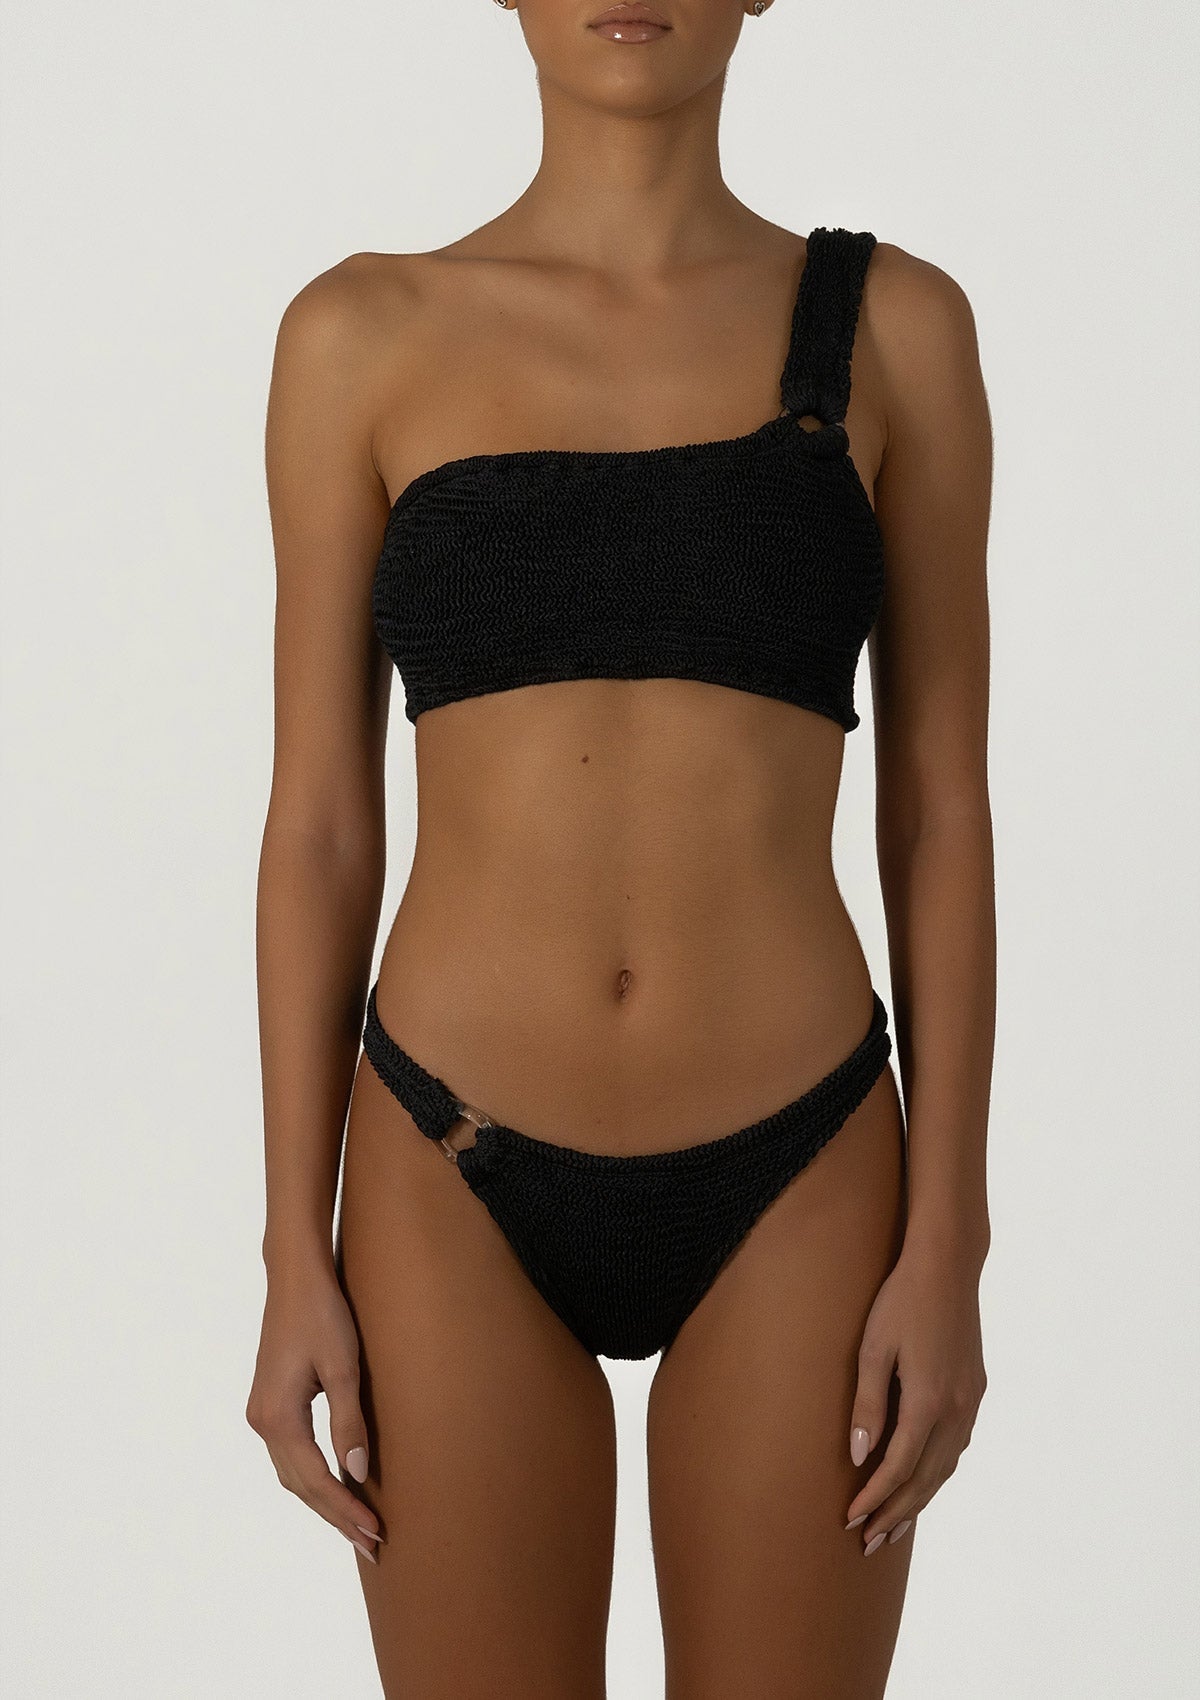 Stassie Black Bikini